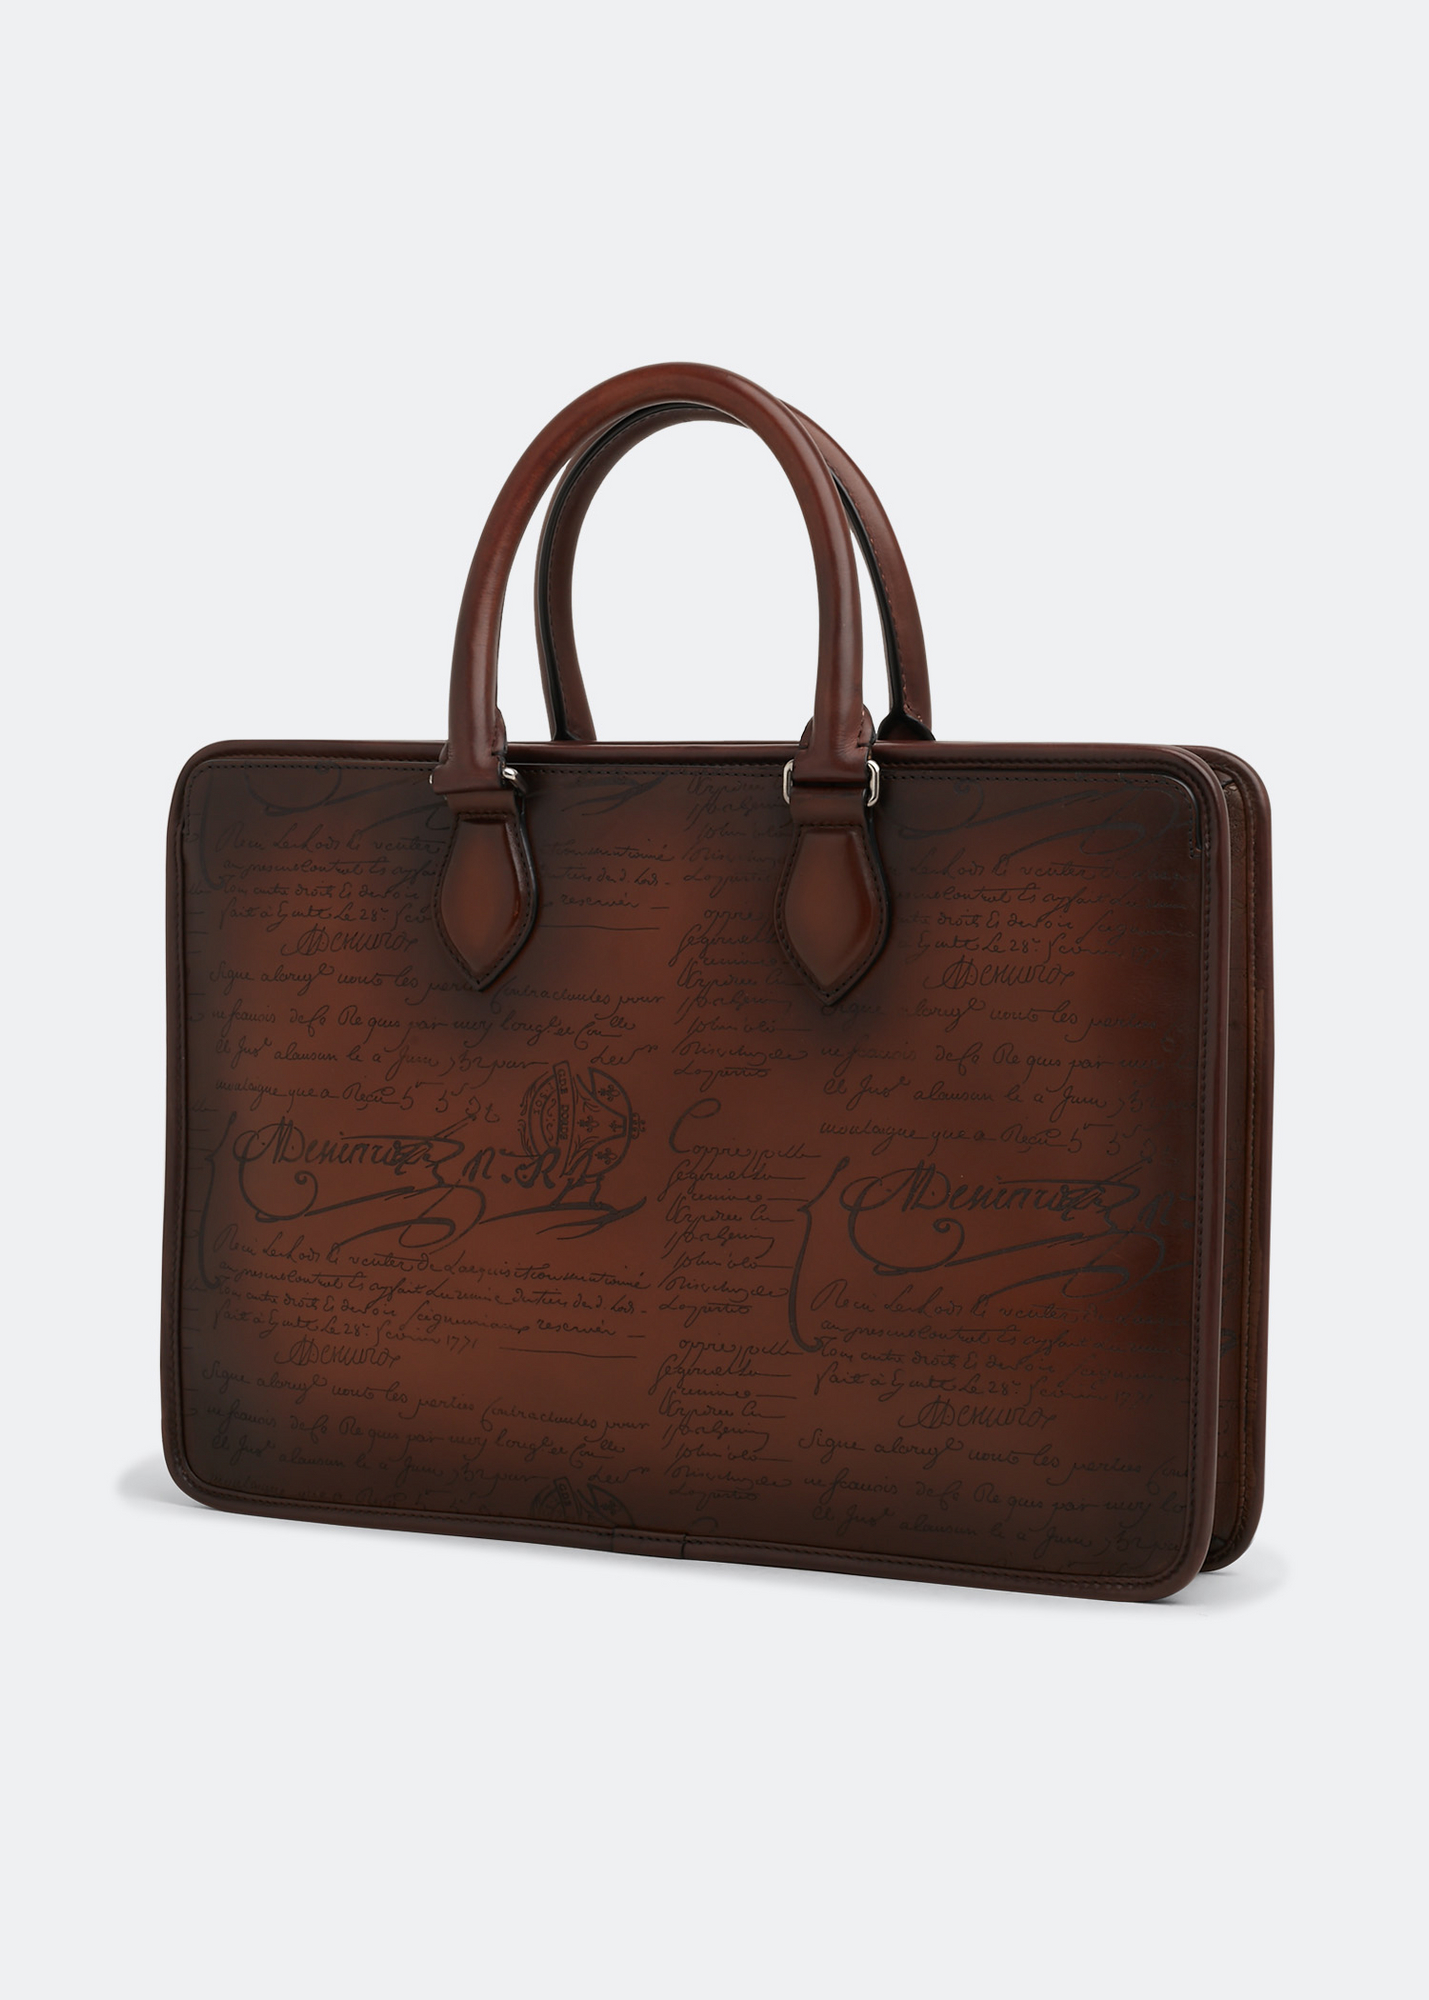 Berluti Un Jour Scritto small leather briefcase for Men - Brown in 